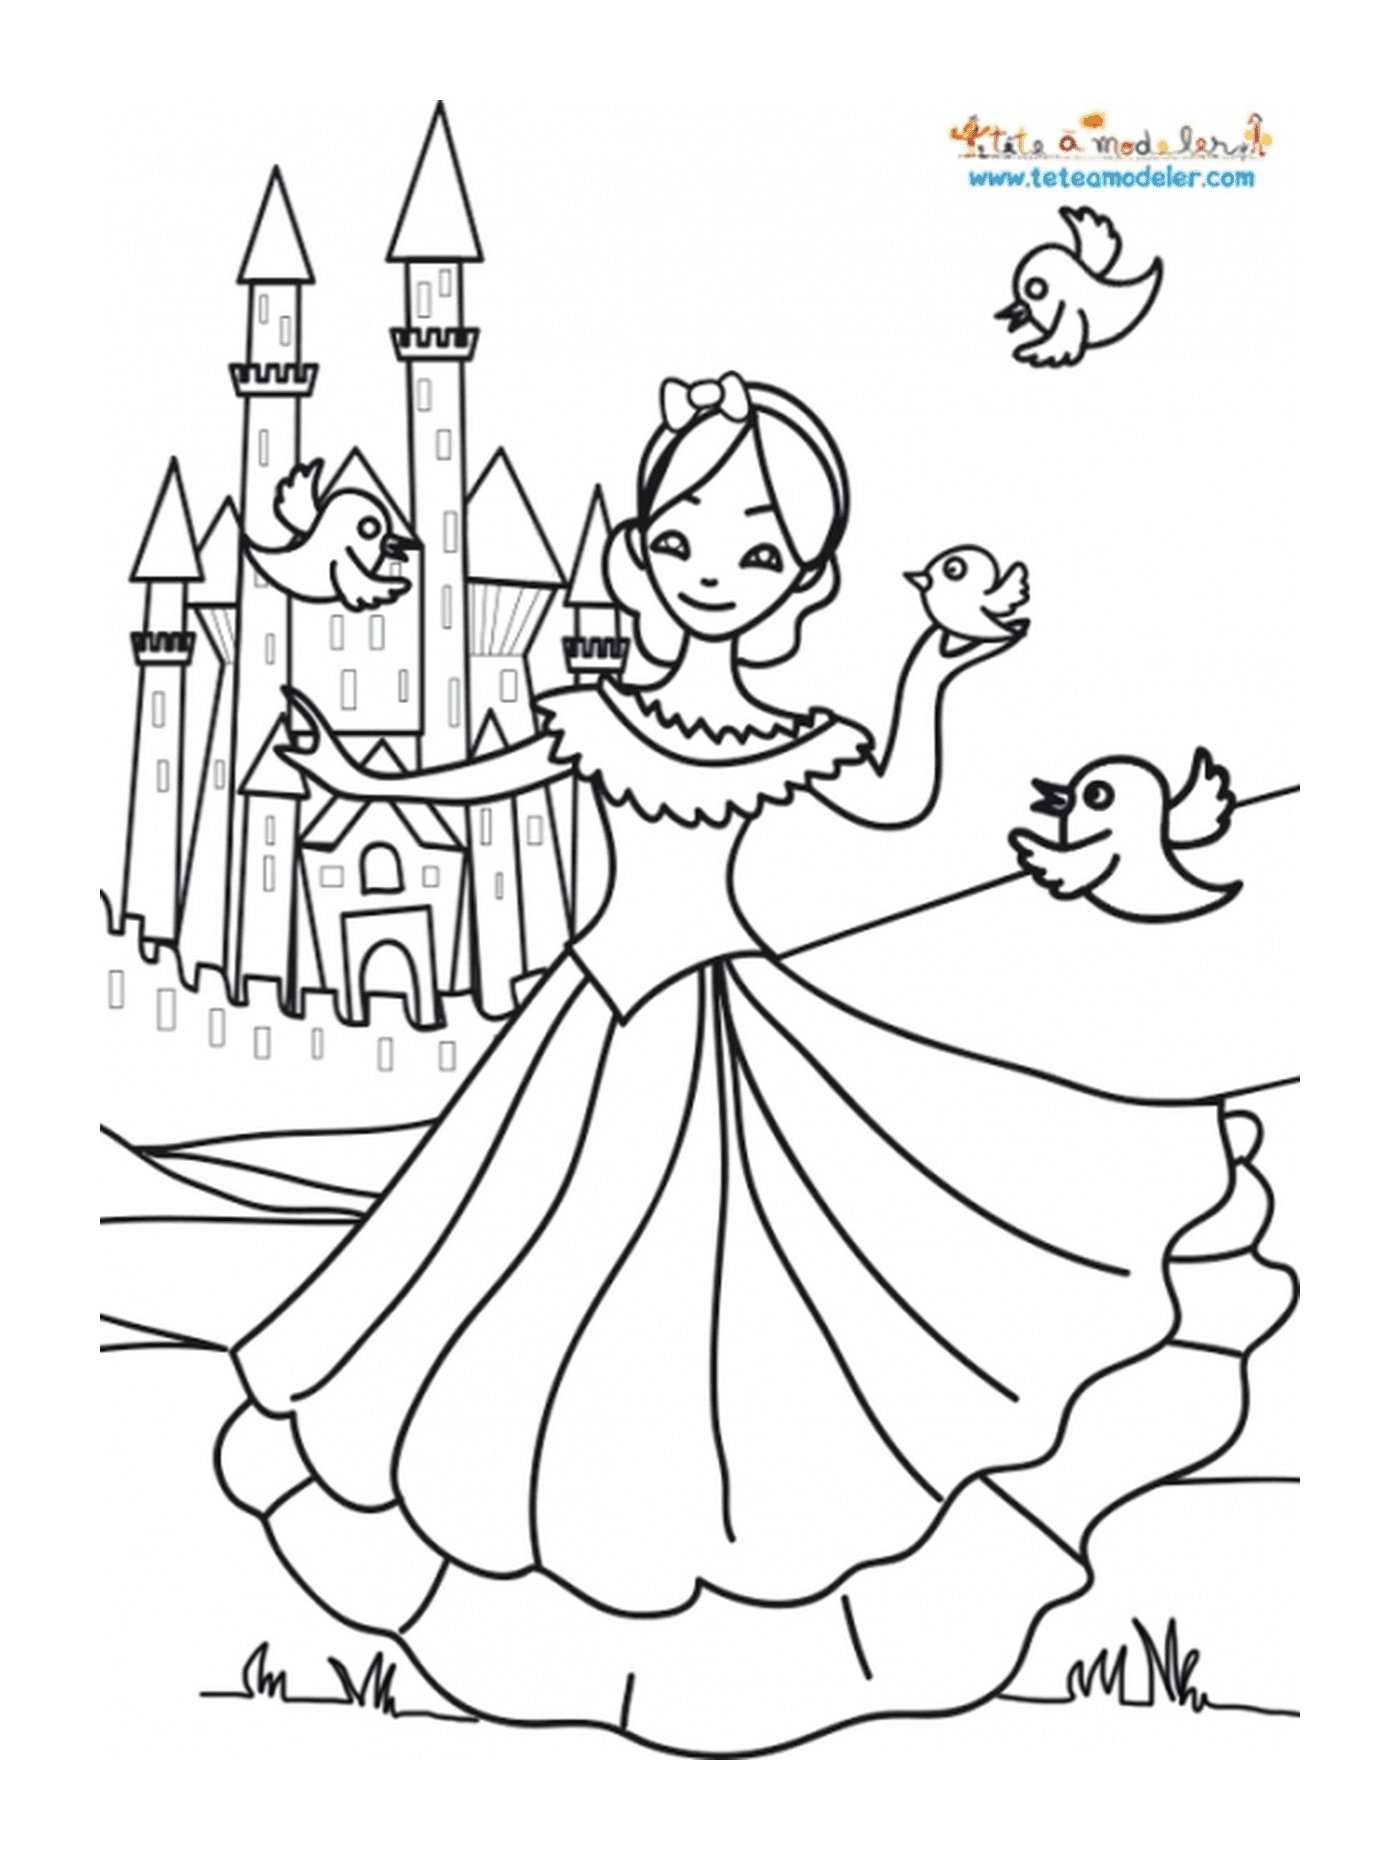   Une fille devant un château, telle une princesse 